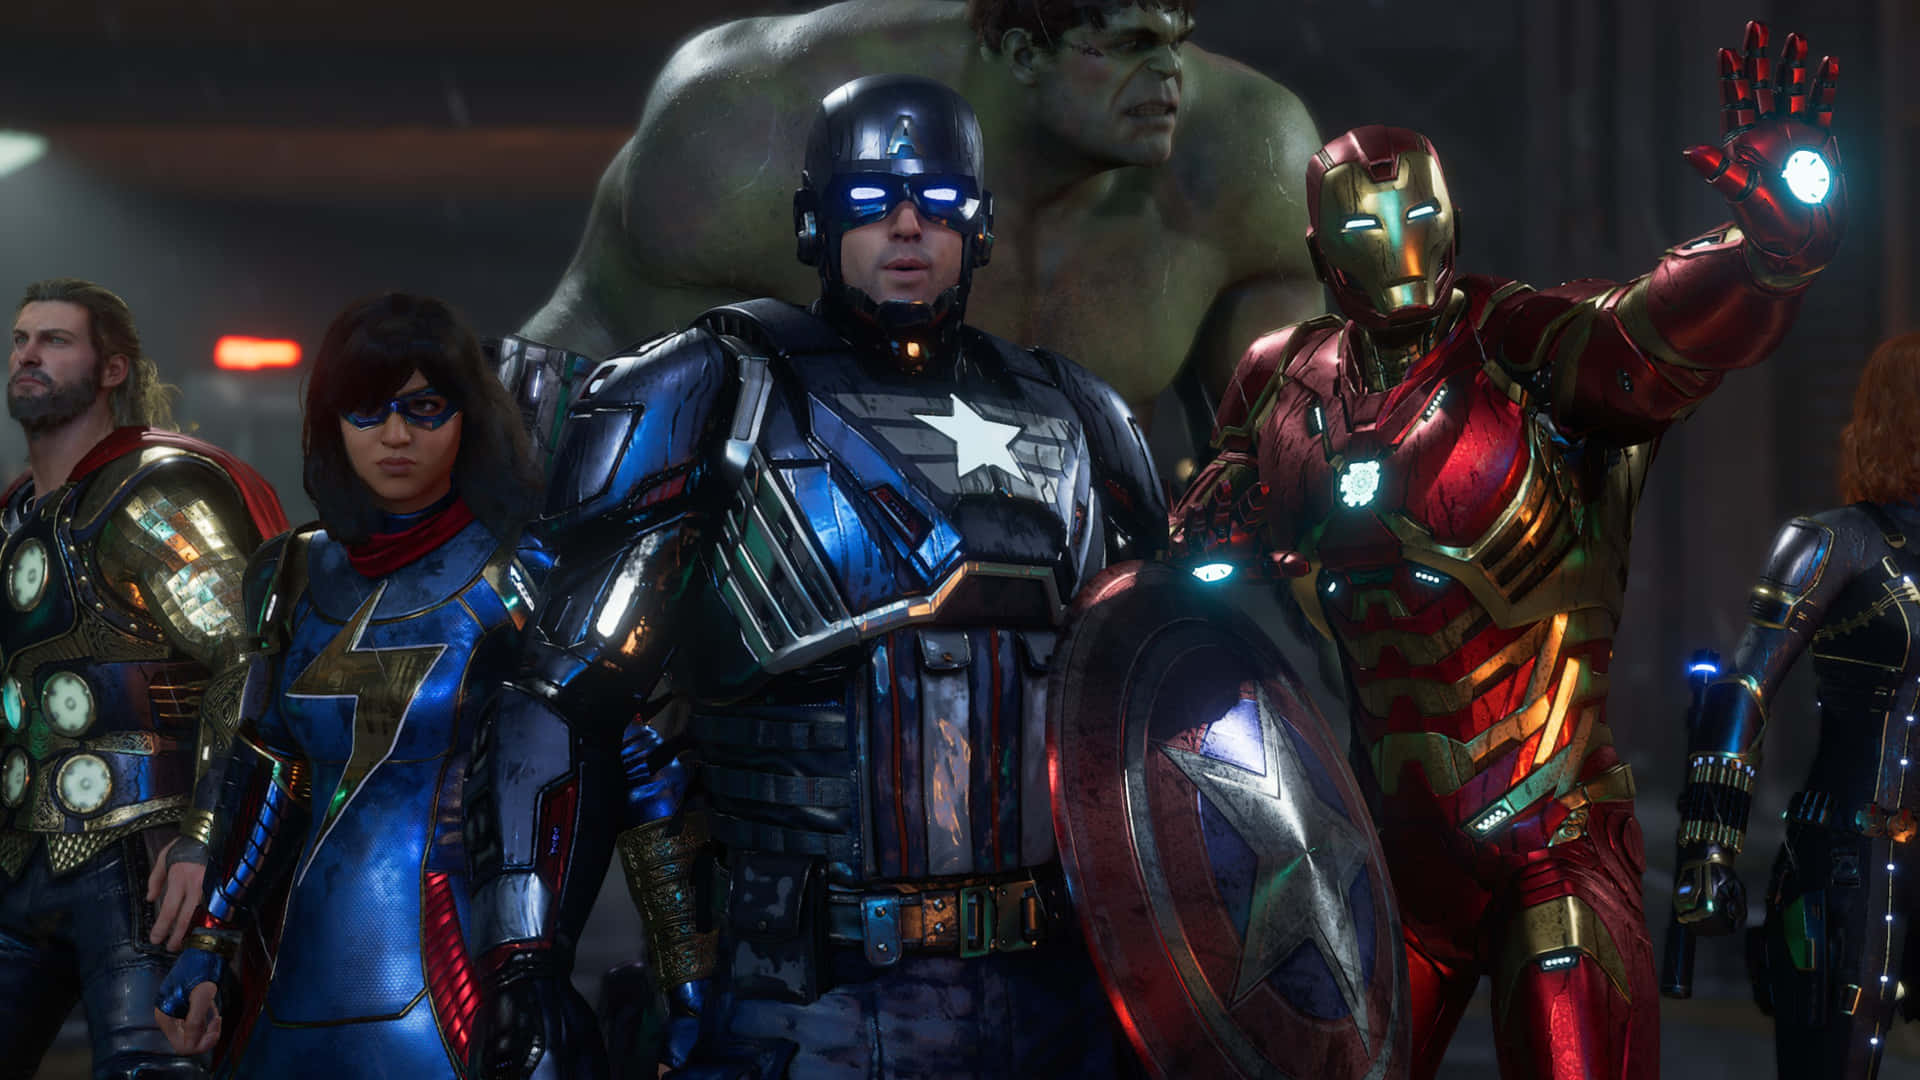 Foren for at redde verden: Mød Avengers!